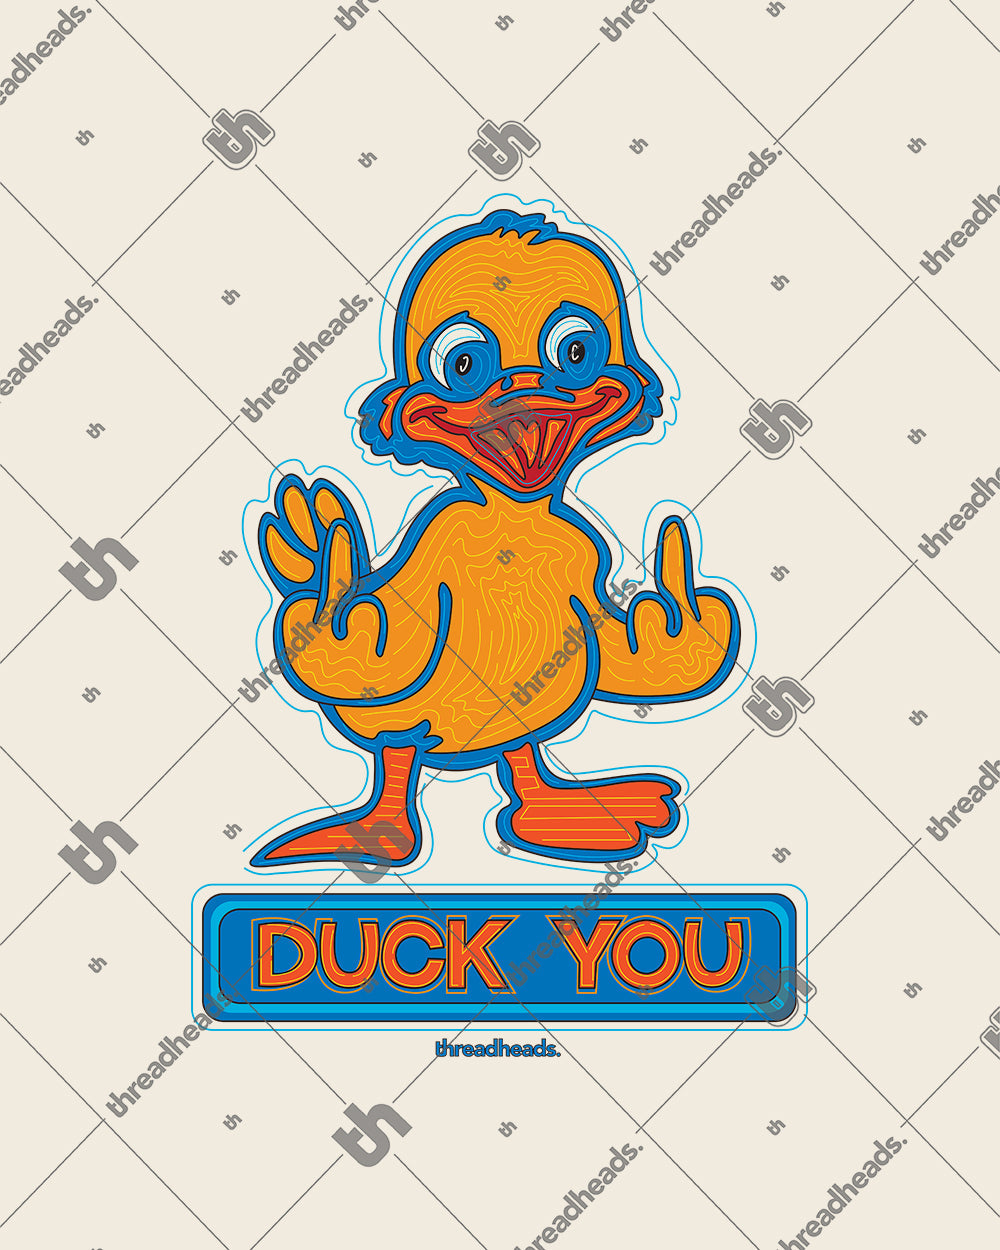 Duck You T-Shirt Australia Online #colour_natural